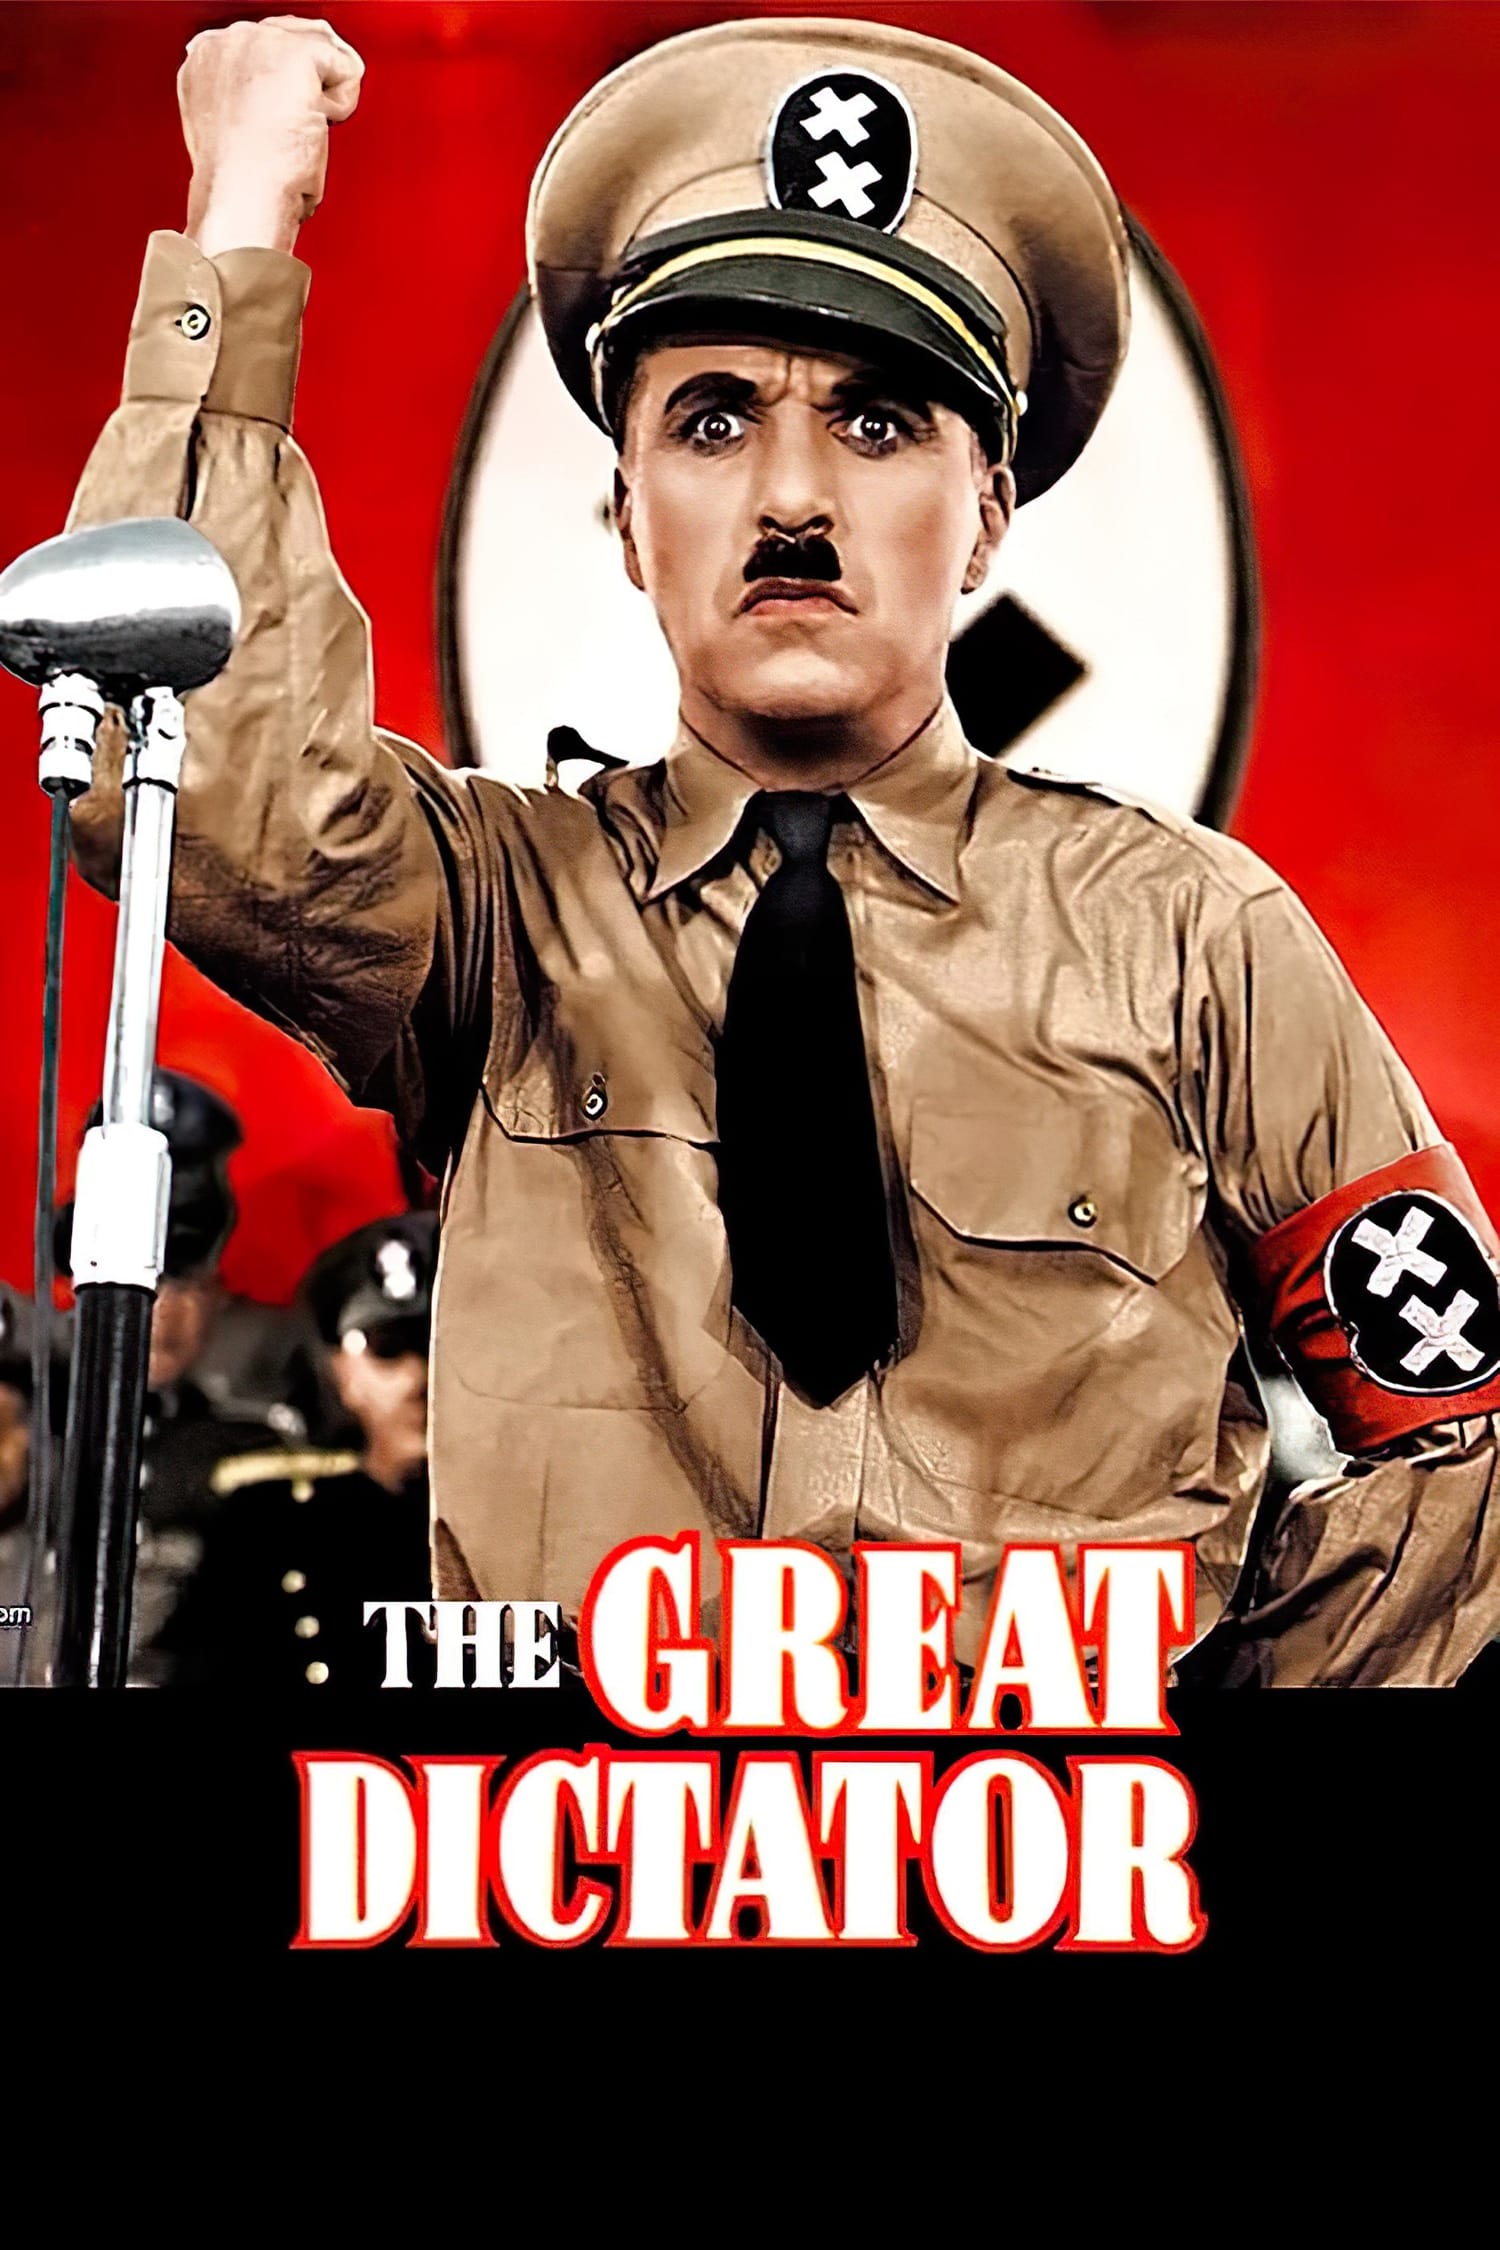 Le Dictateur (1940)